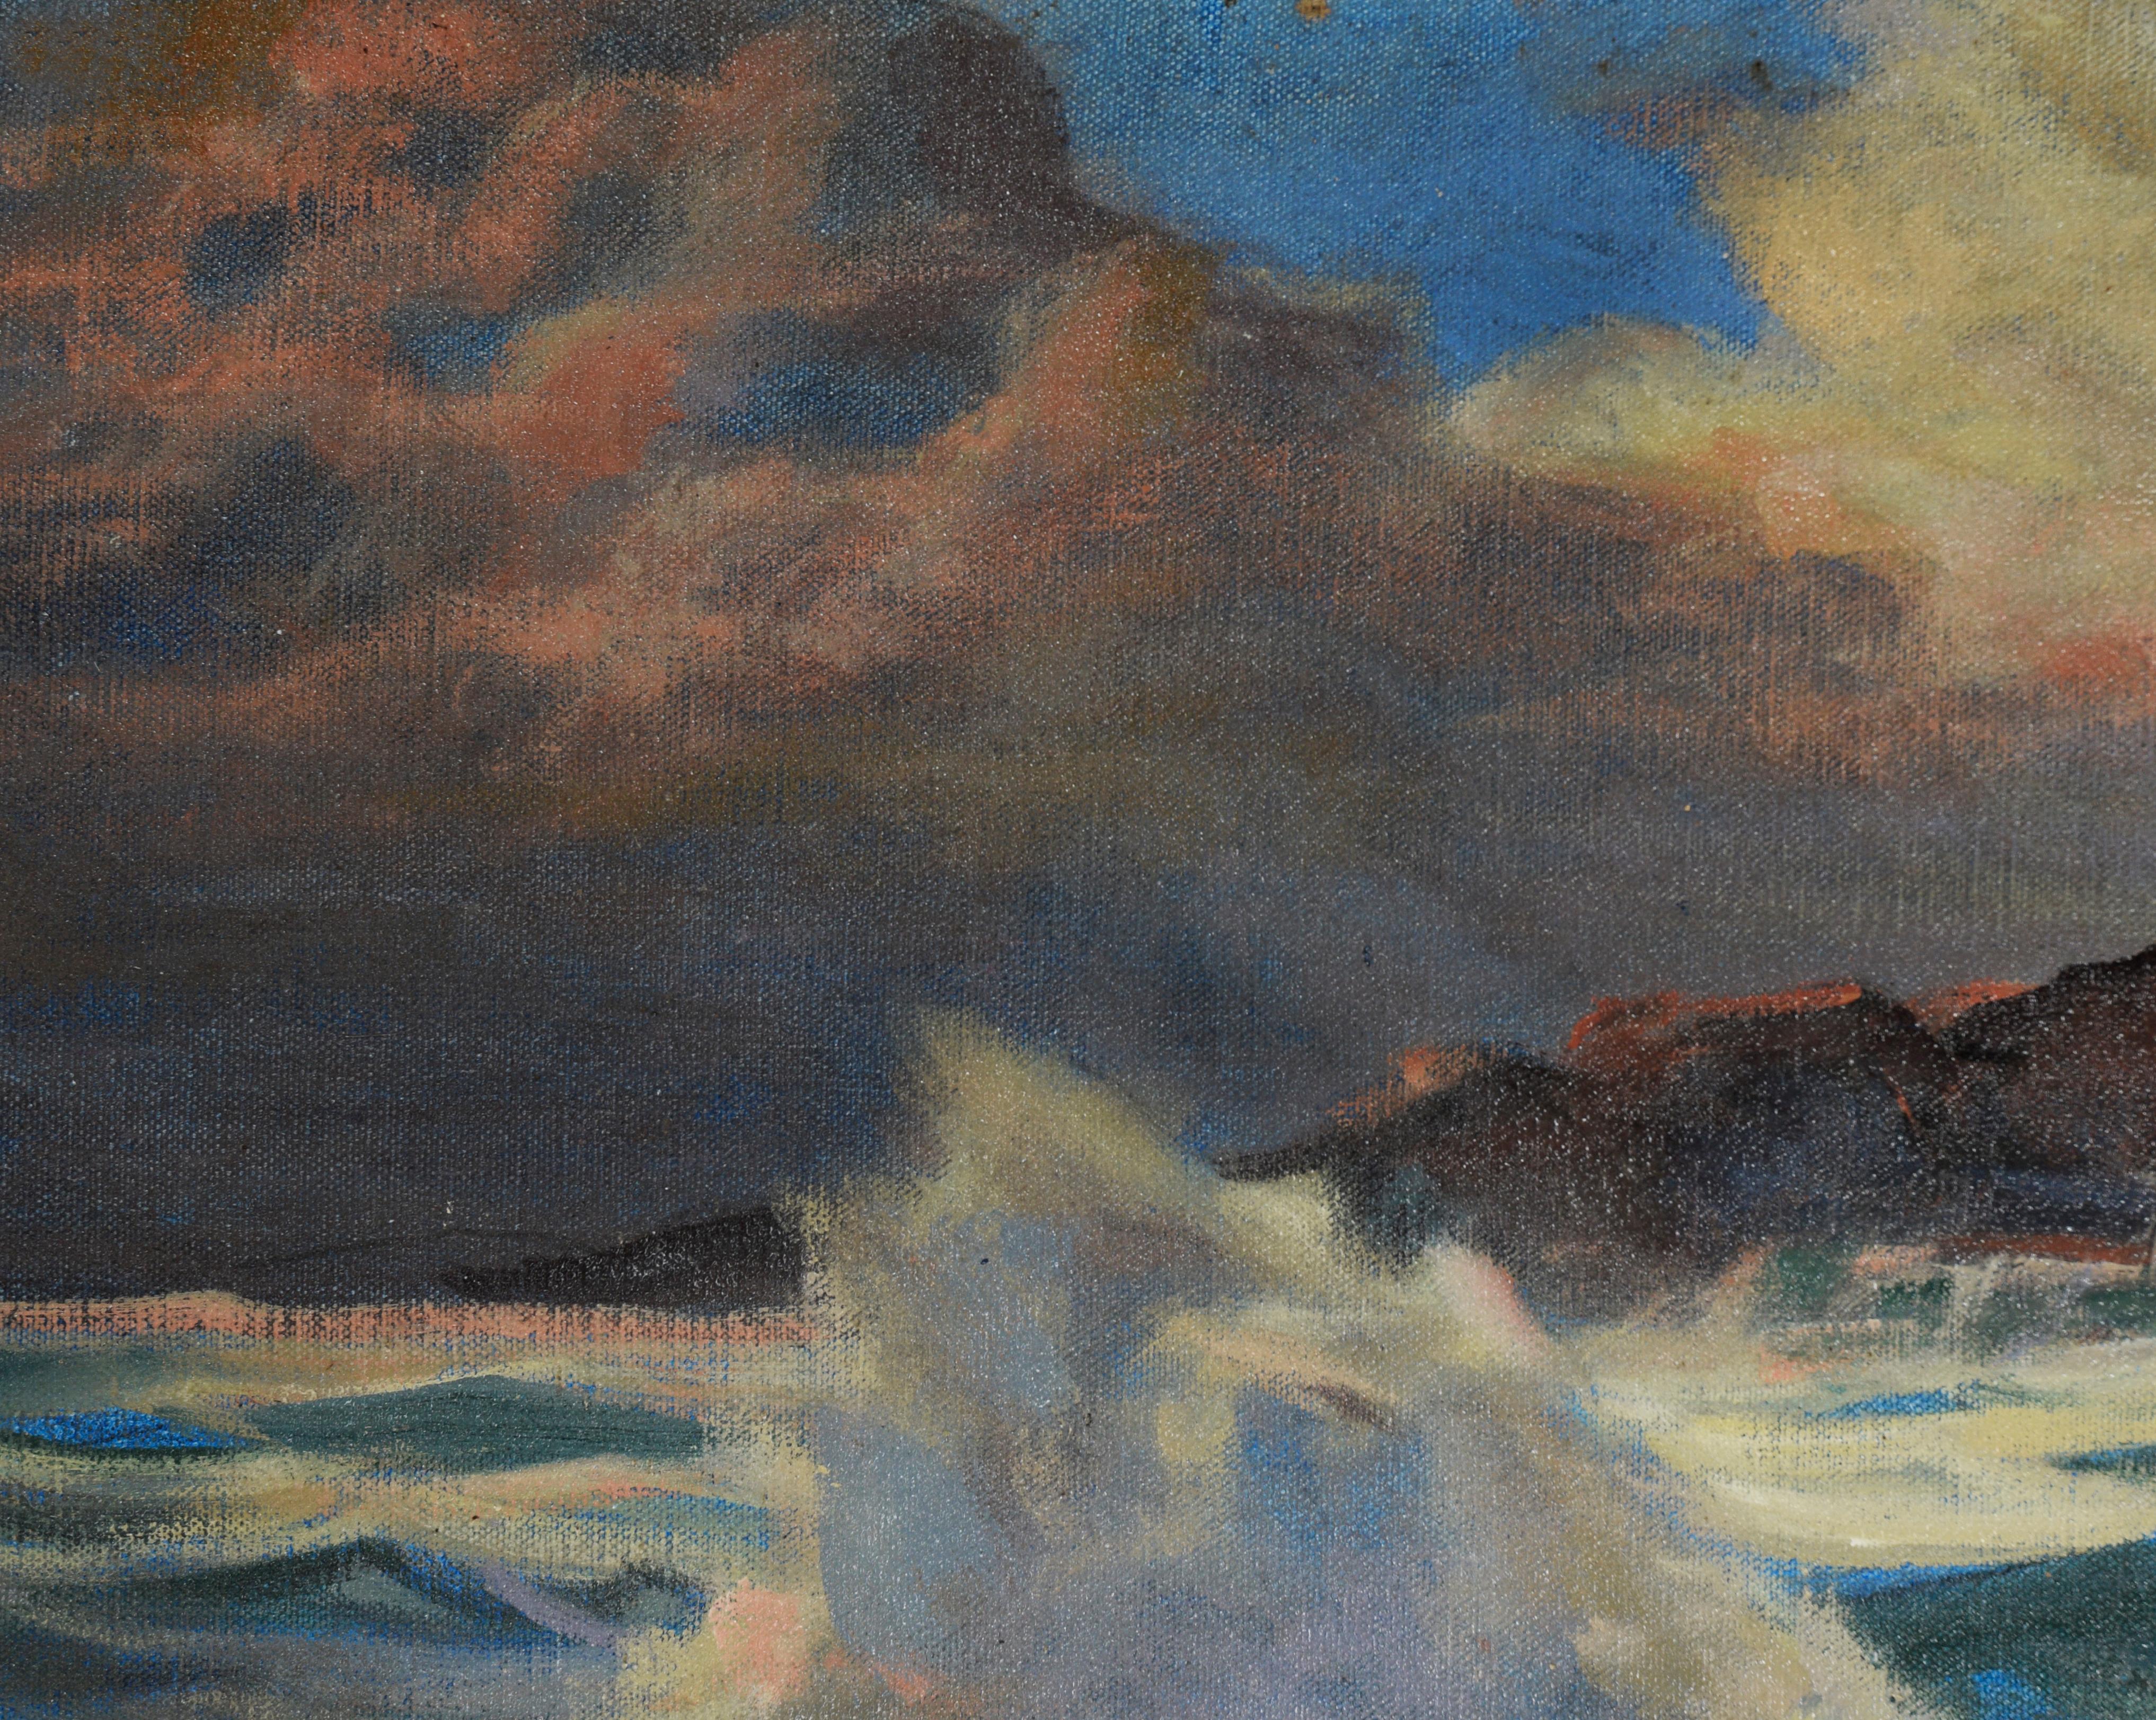 Gegen die Flut - Öl auf Leinen

Ölgemälde der kalifornischen Küste bei Sonnenuntergang im Stil von Edgar Alwin Payne (Amerikaner, 1883-1947). In den oberen Ecken posieren tiefgraue Wolken, durch die rosafarbenes Licht schimmert. Die kabbeligen